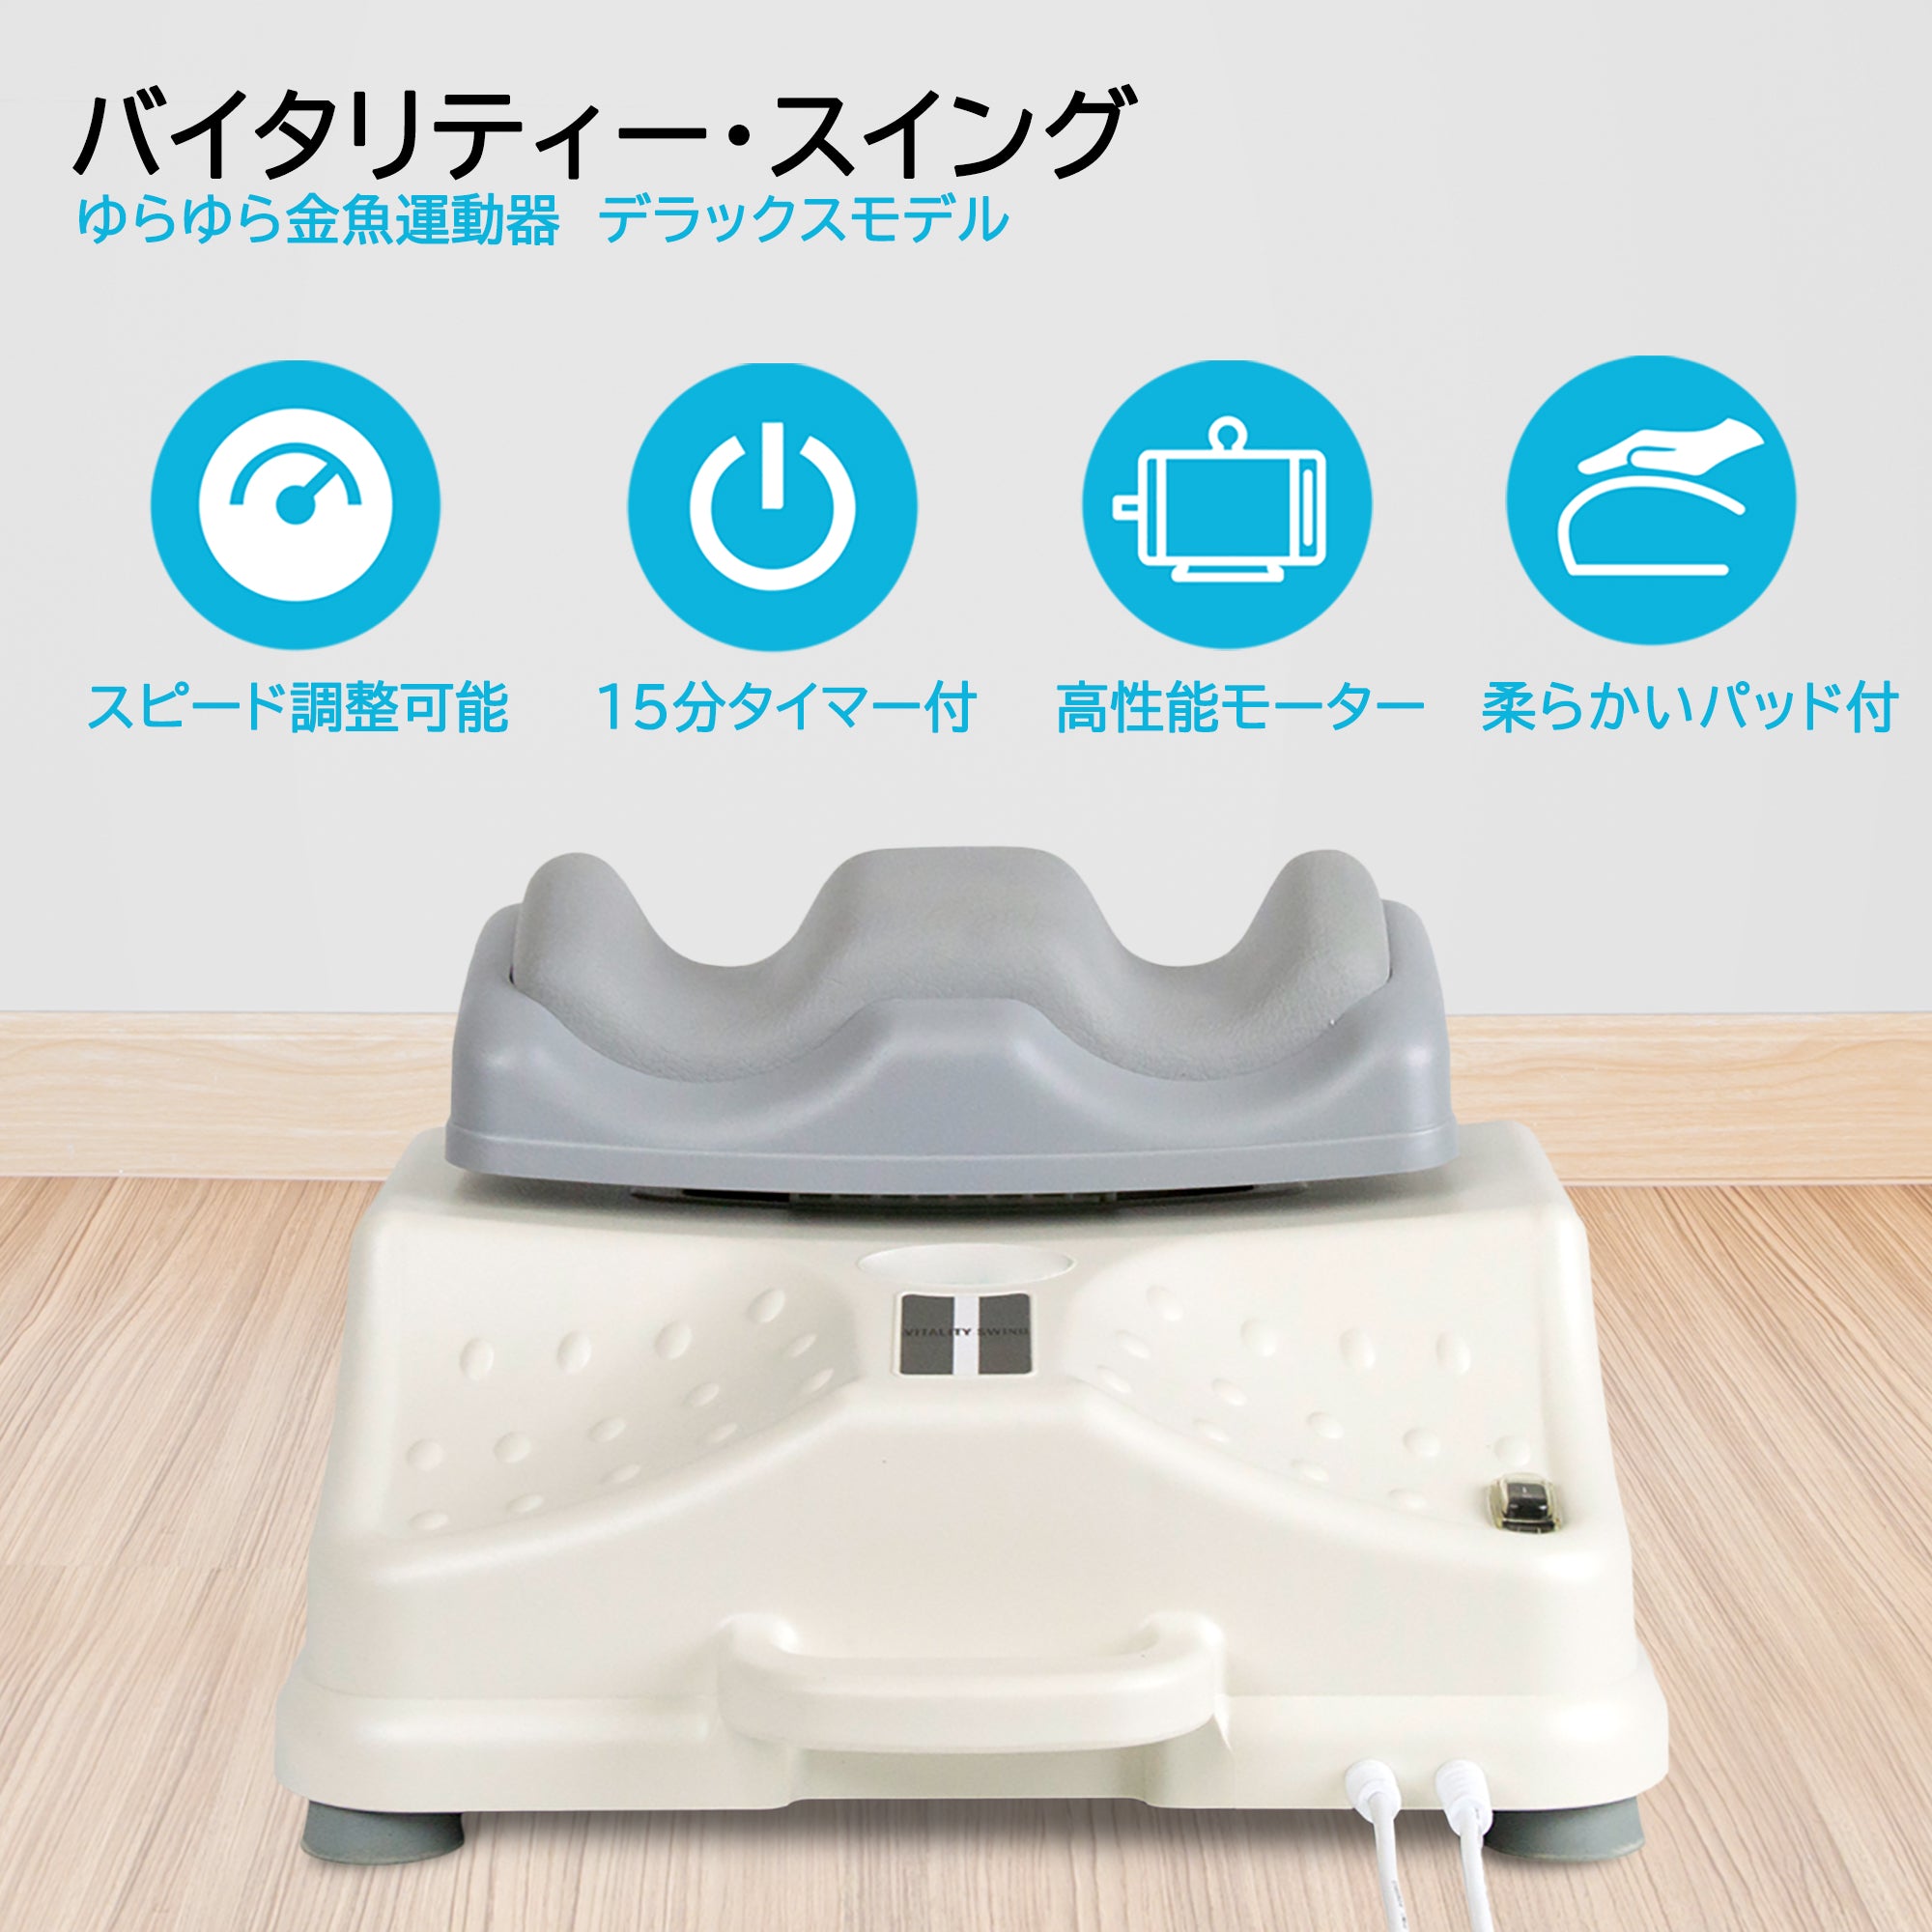 全身金魚運動マシン(vitality-swing)アマゾン購入価格43800円